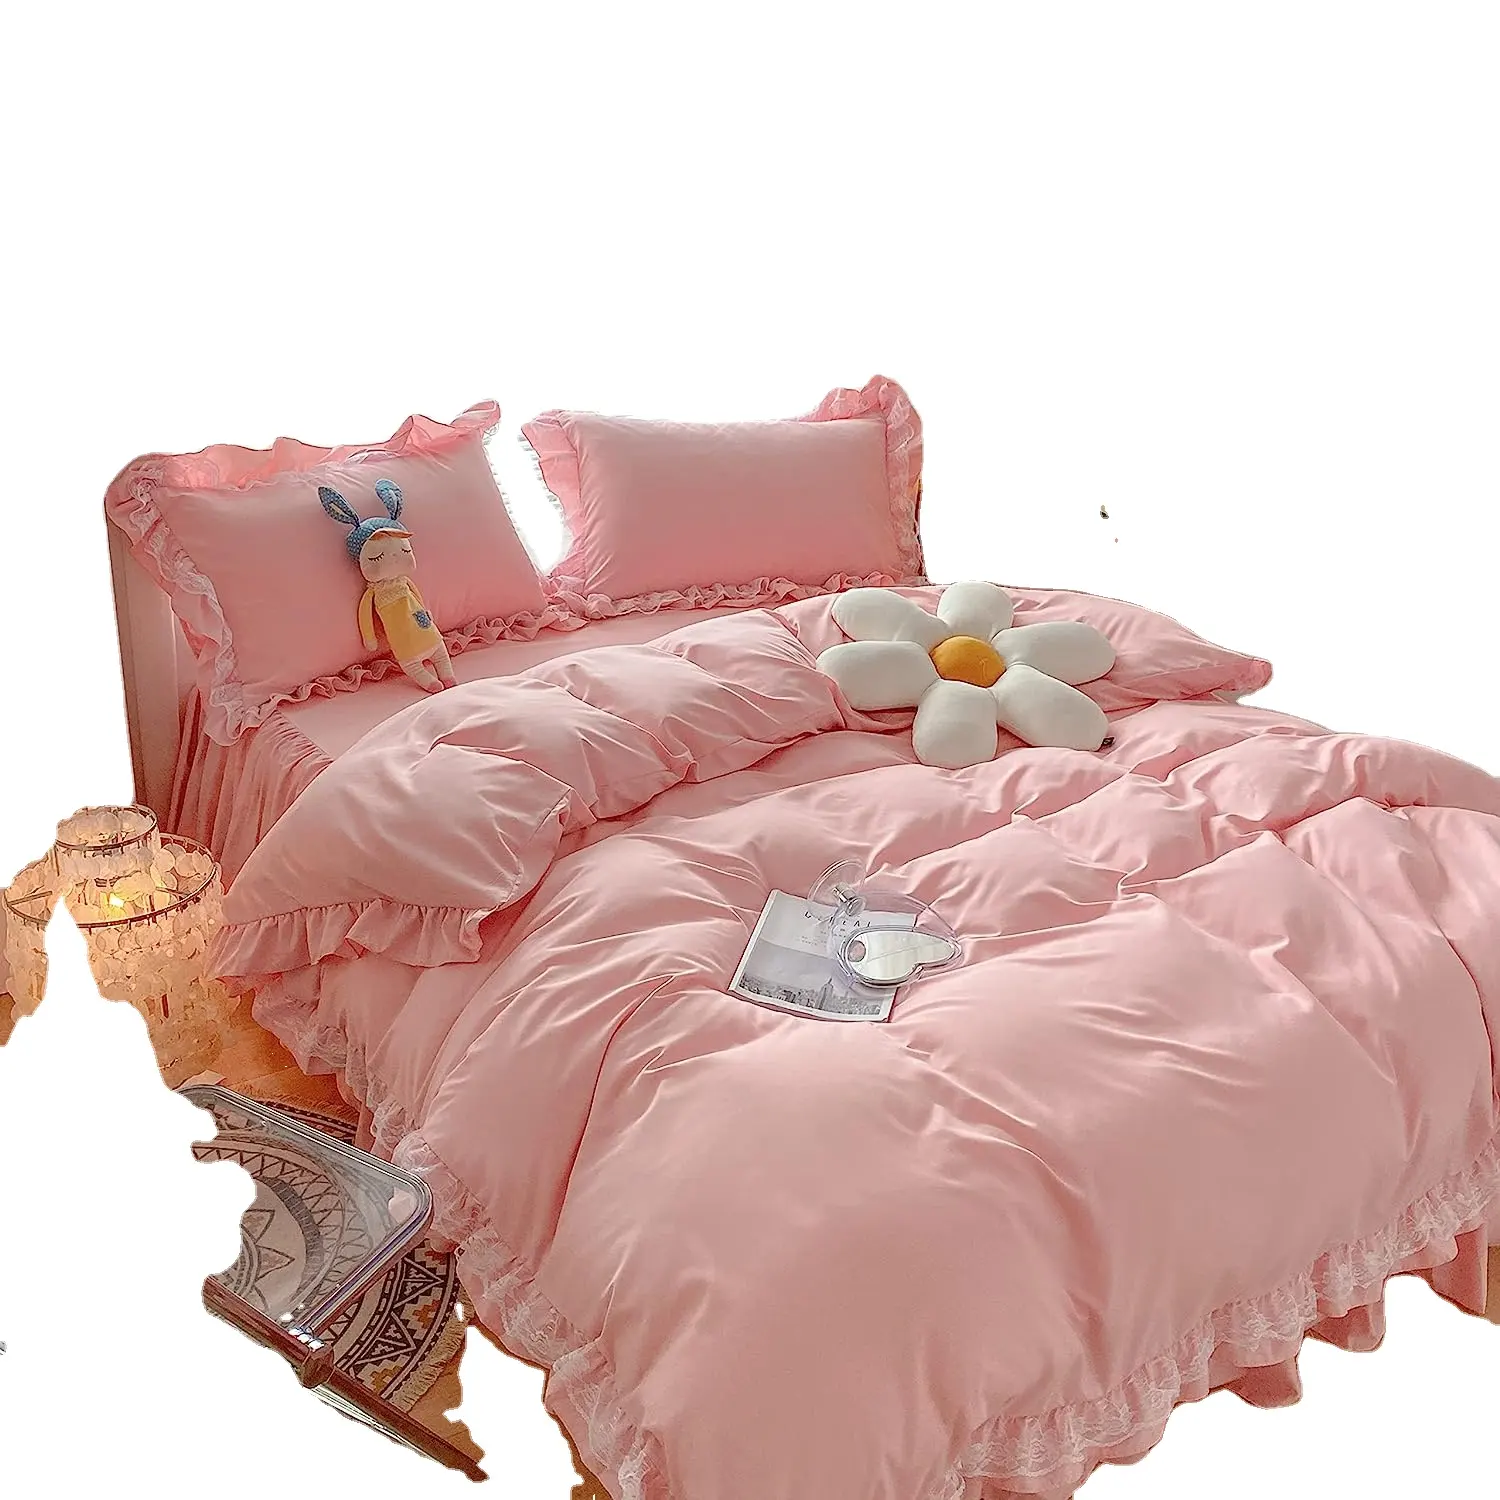 Kustom selimut penutup selimut penutup dengan ritsleting dasi duvet cover dengan ritsleting pink set tempat tidur gadis